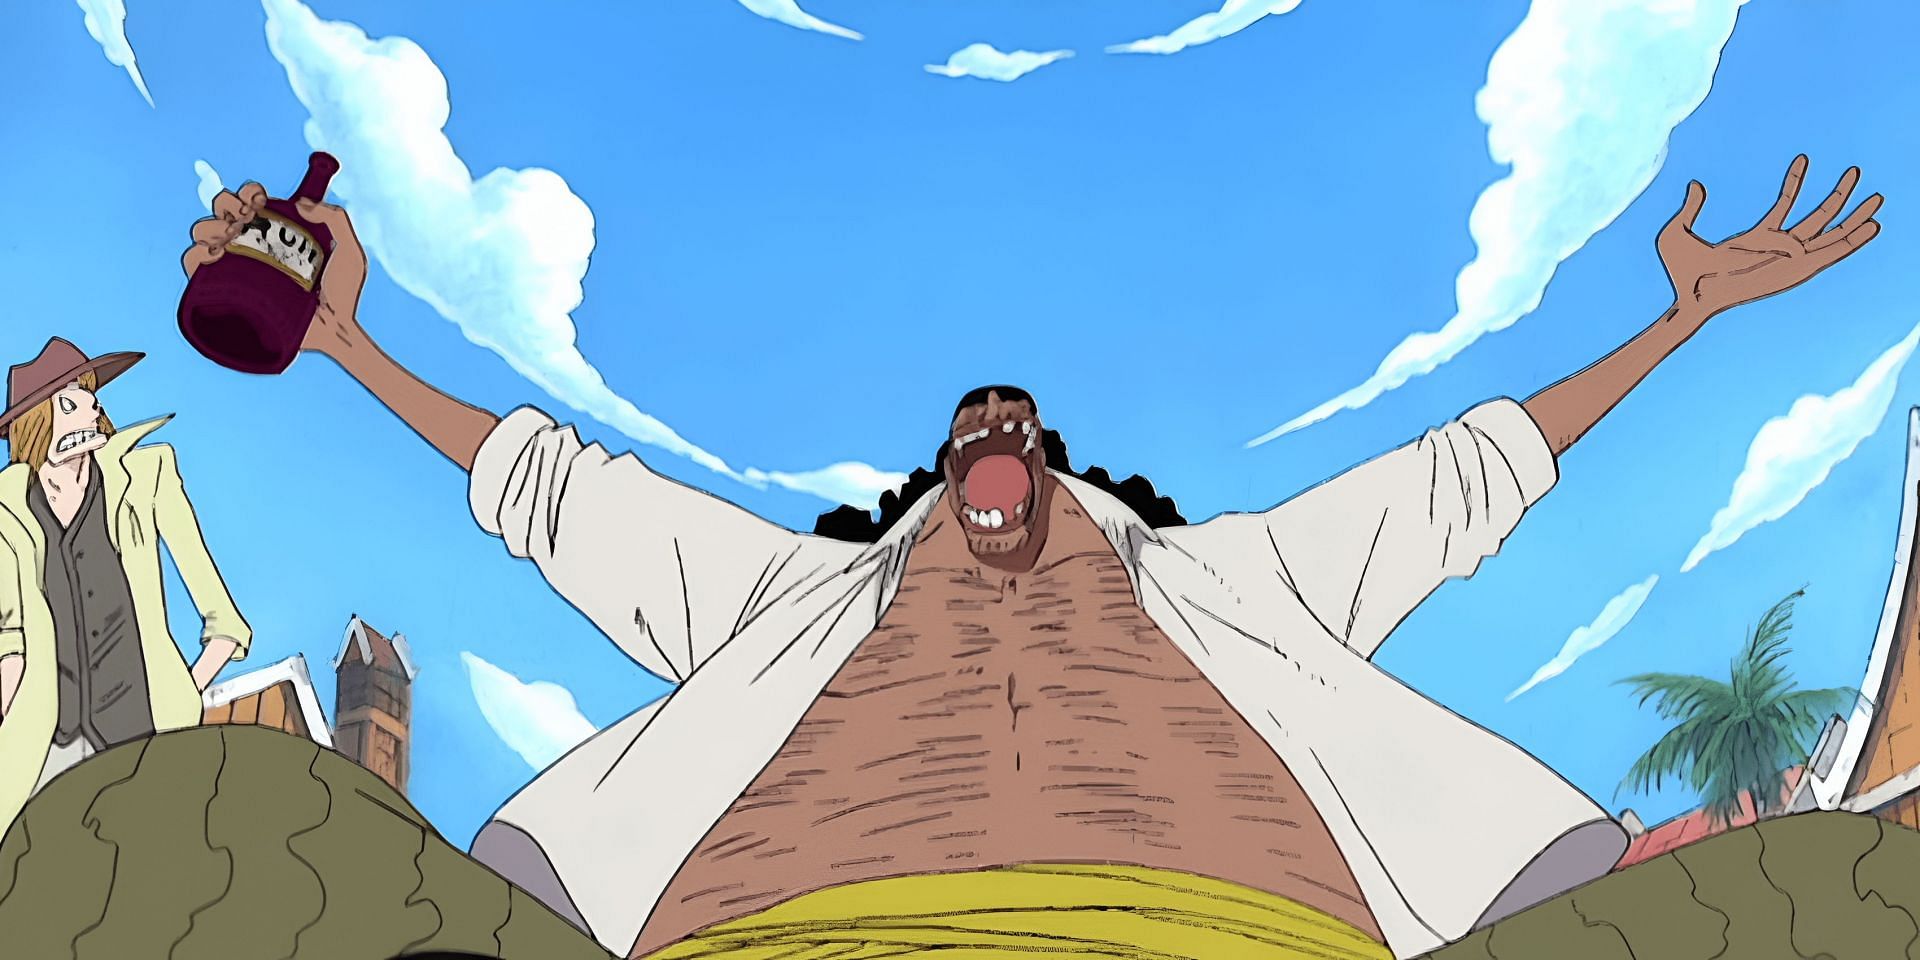 Blackbeard as seen in One Piece (Image via Toei Animation)